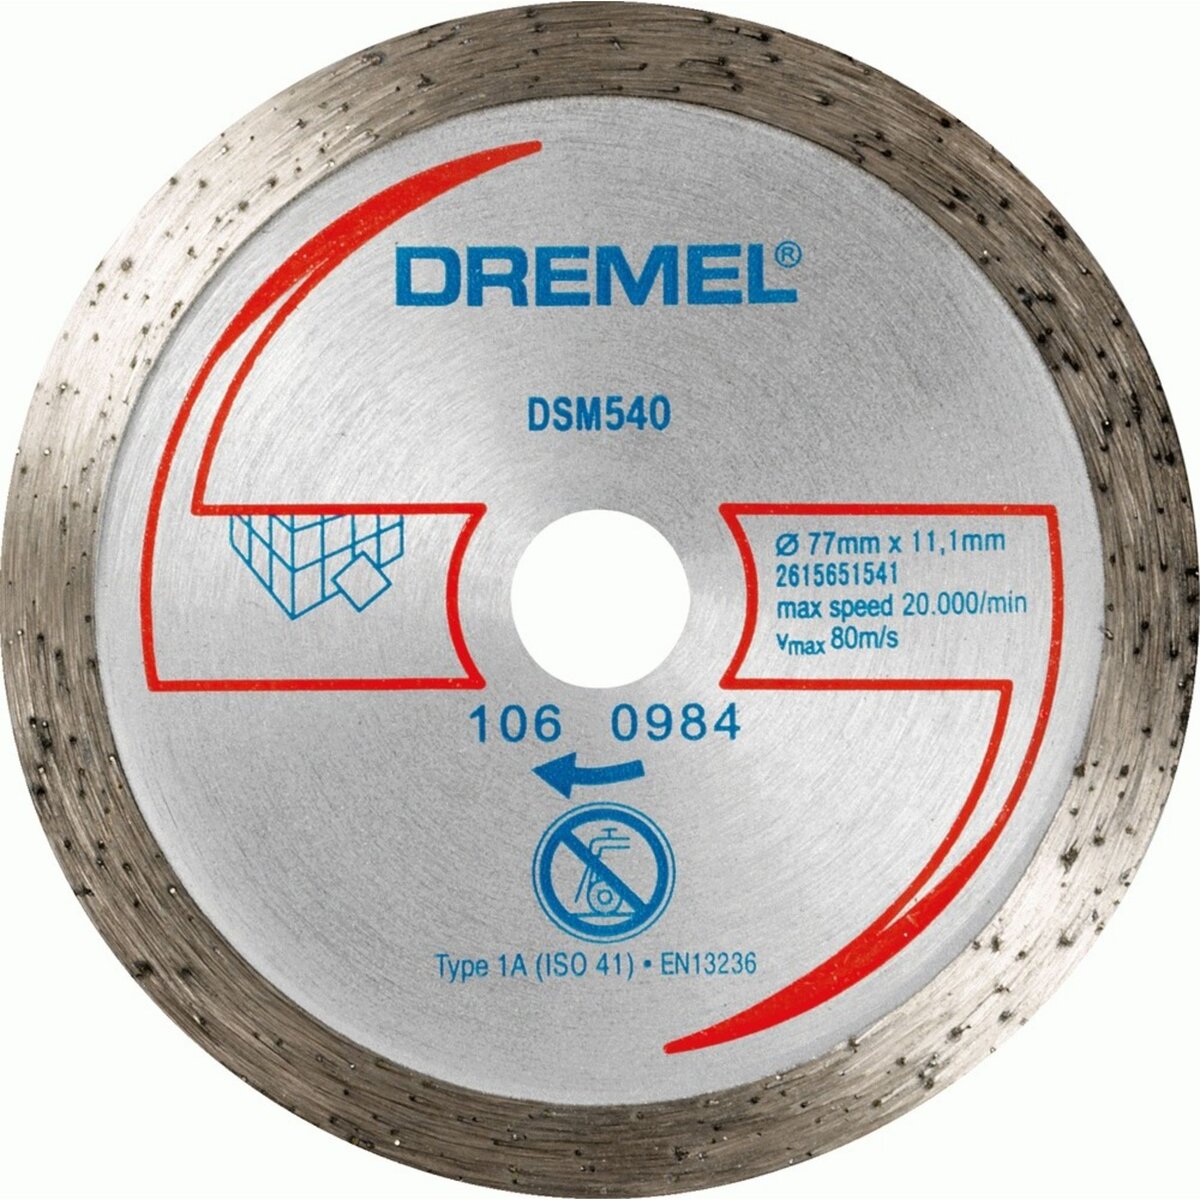 Dremel Disque à tronçonner diamanté Dremel S540 pour matériaux durs/DSM20 -  Ø 77mm